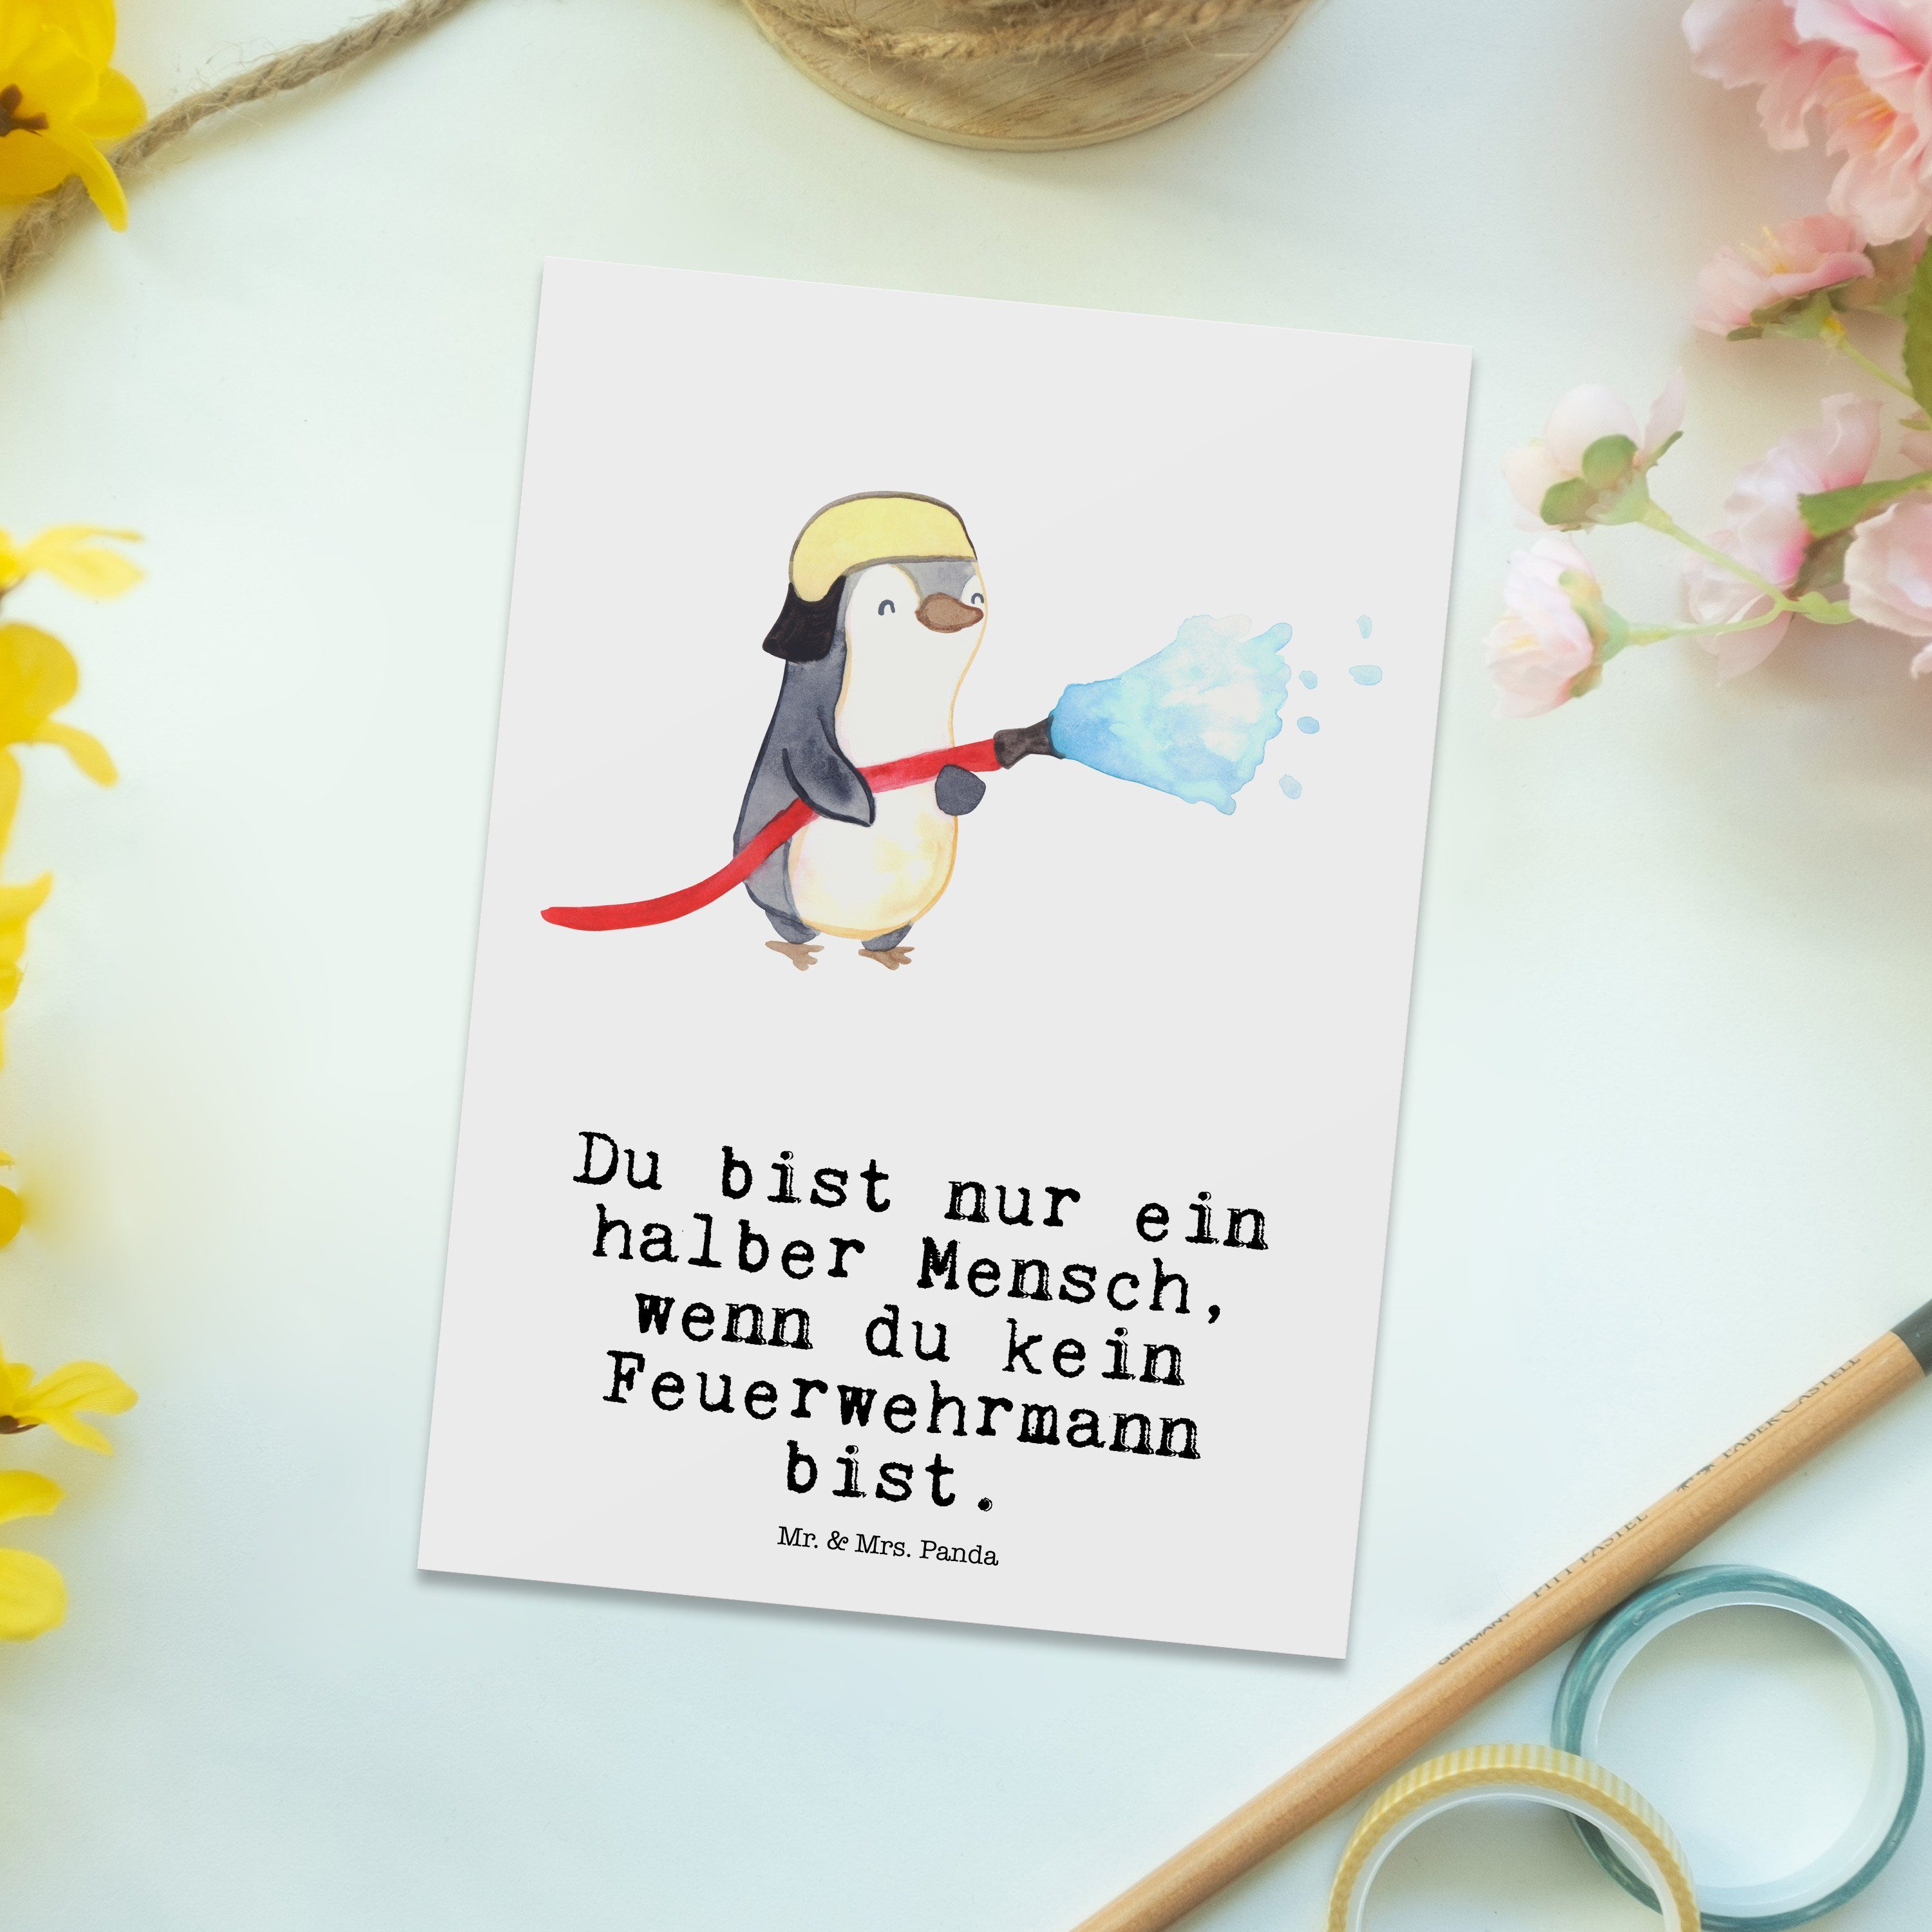 Mr. Postkarte Weiß Feuerwehrmann mit Panda & freiwil Herz Geschenk, Feuerwehrhauptmann, Mrs. - -